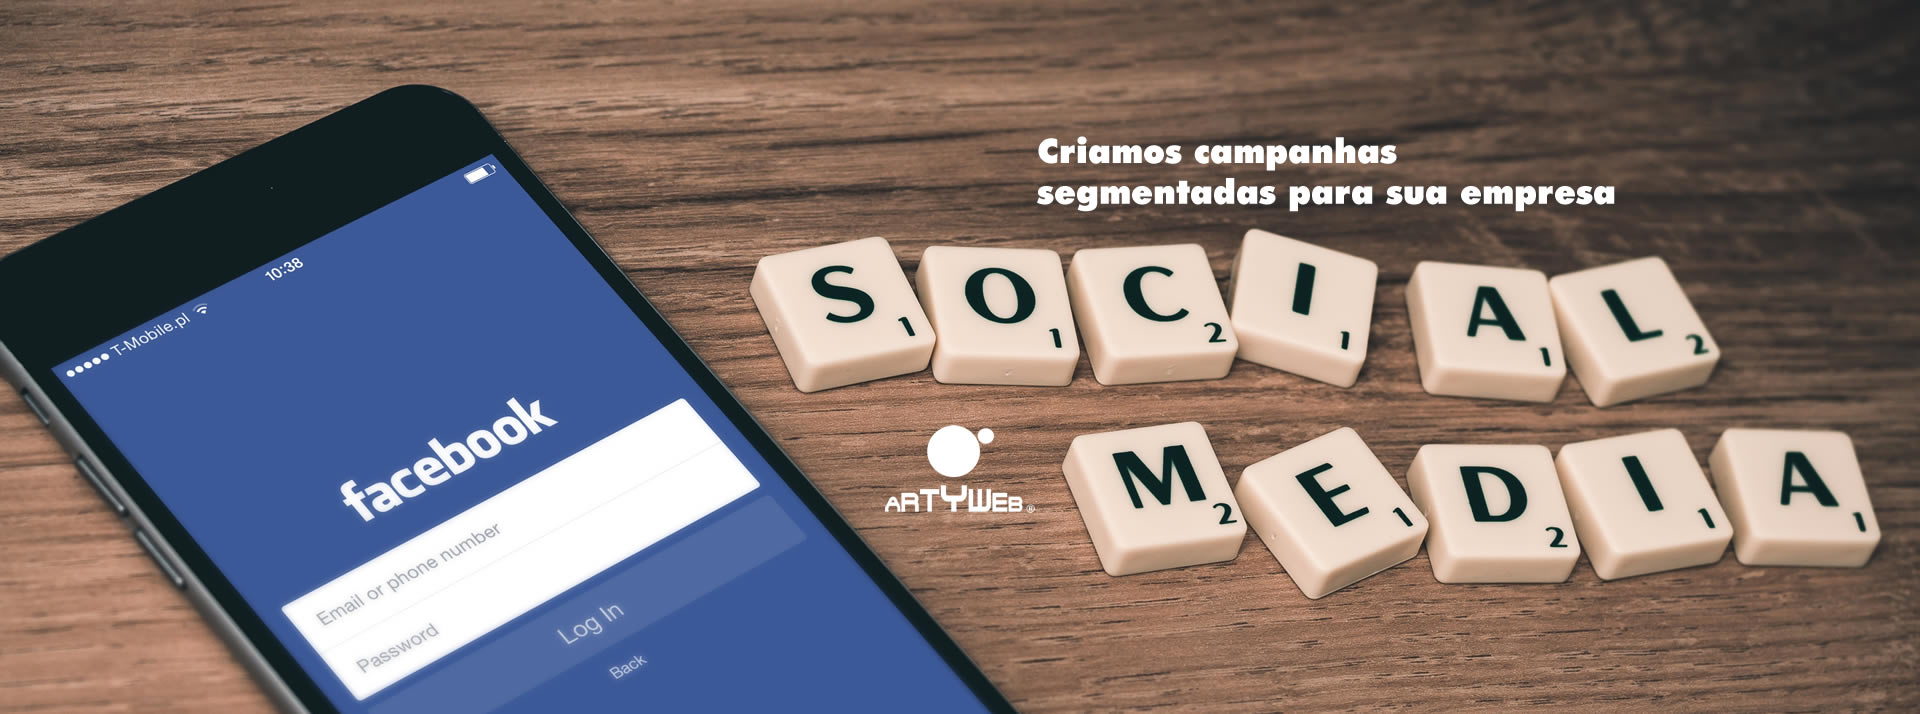 Campanhas segmentadas no Facebook, Instagram e Google